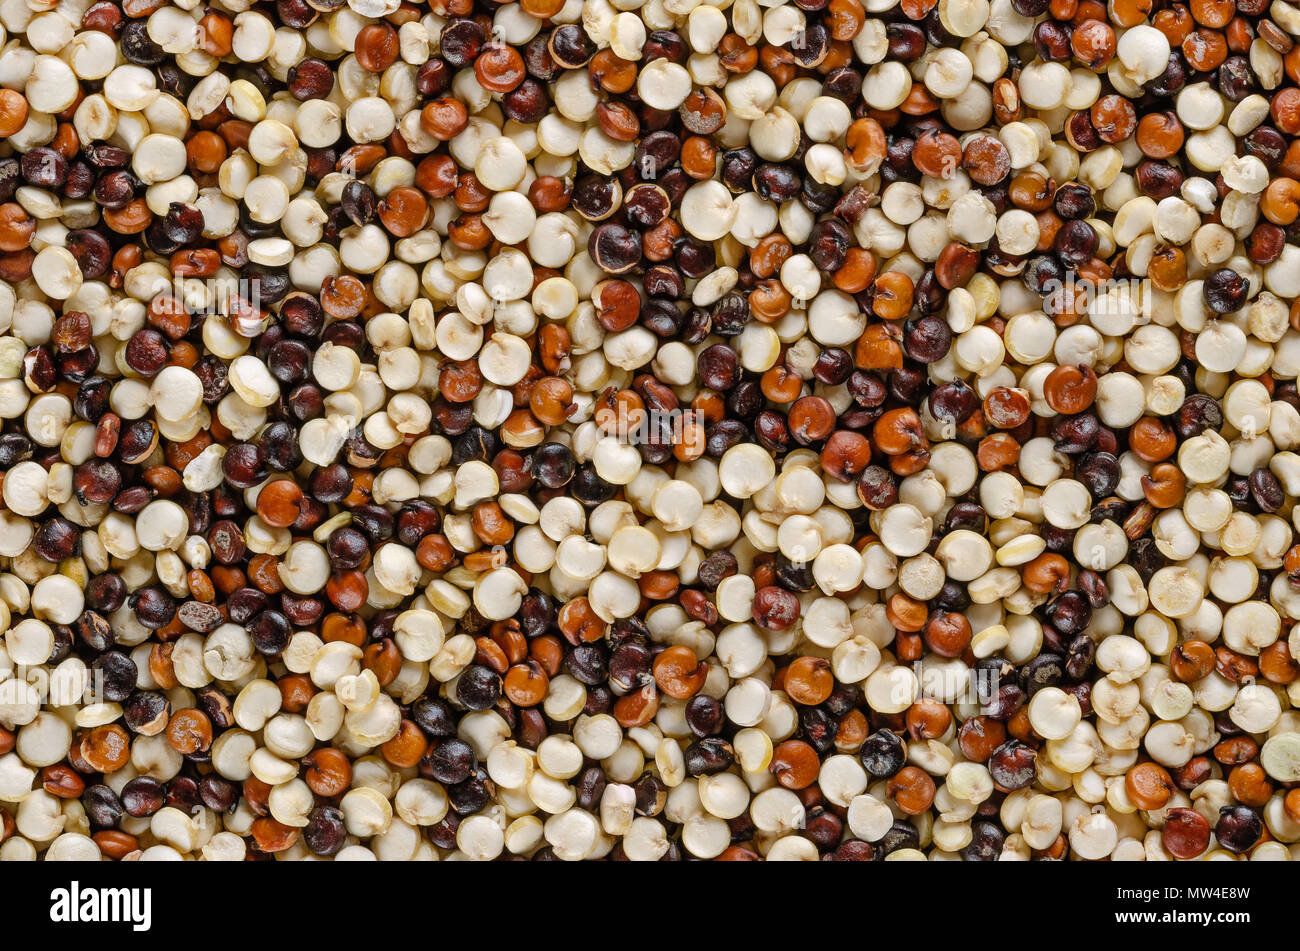 Les graines de quinoa mixte, macro photo, à partir de ci-dessus. Pseudocereal. Jaune, rouge et noir fruits de la récolte du grain Chenopodium quinoa. L'alimentation macro photo. Banque D'Images